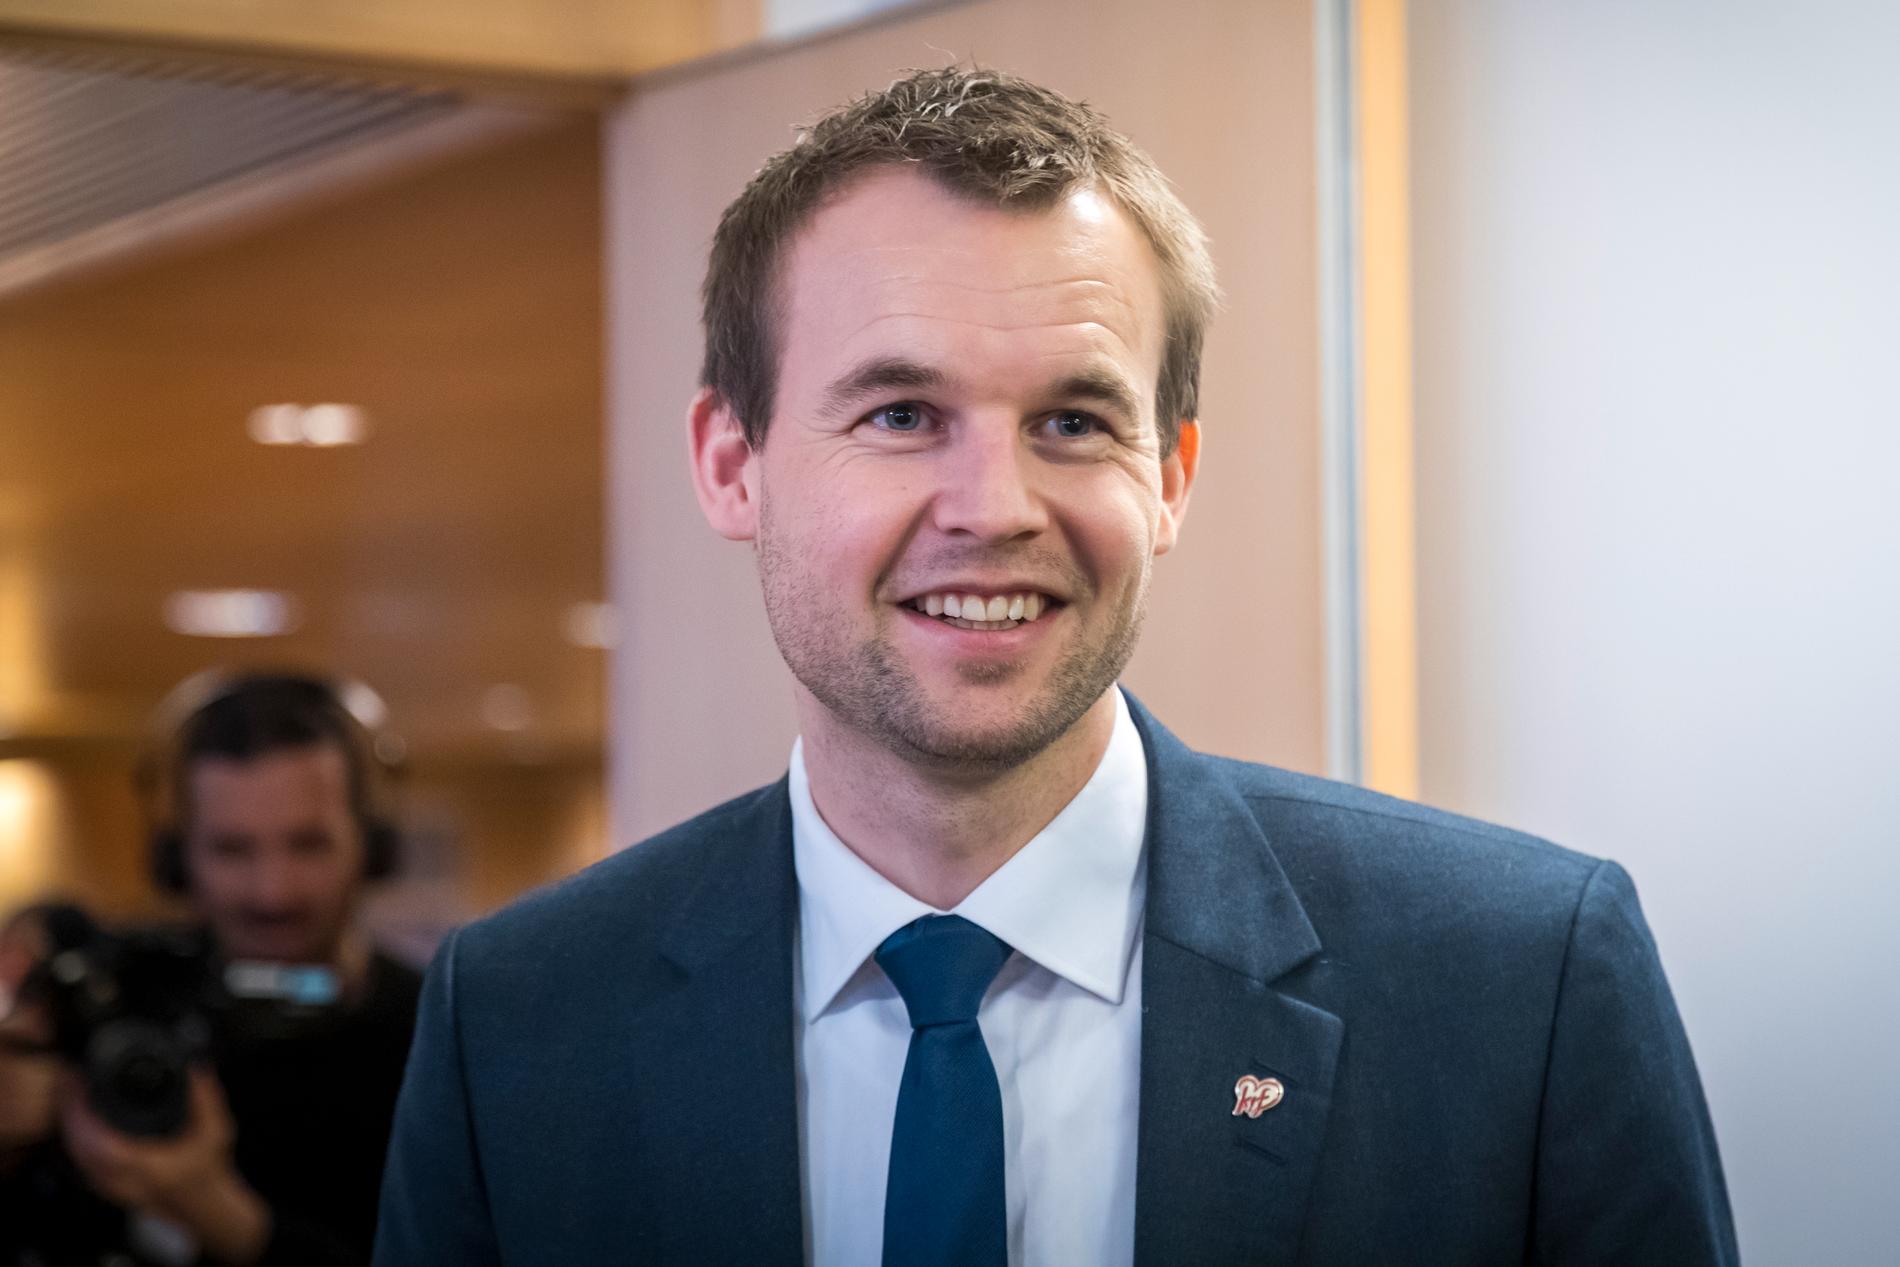 NY LEDER? Mange tror den ferske barne- og familieministeren Kjell Ingolf Ropstad vil bli KrFs nye leder på landsmøtet i april, men også andre navn nevnes.